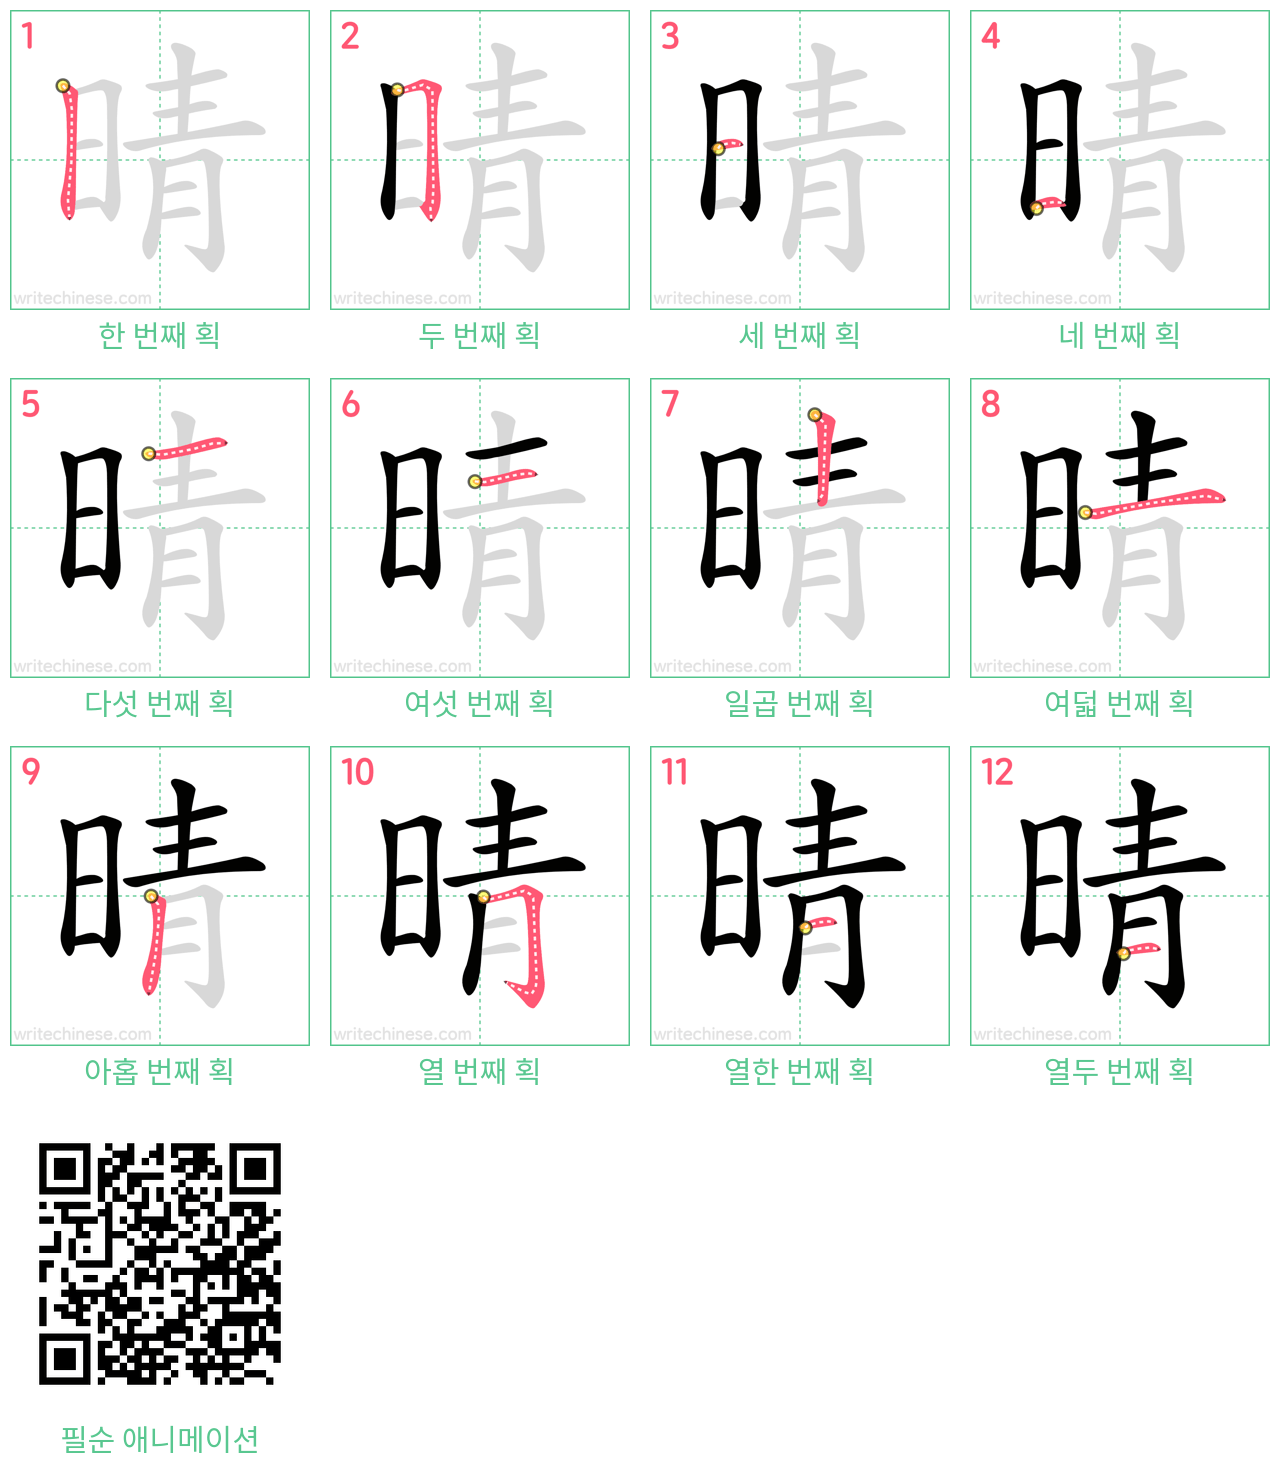 晴 step-by-step stroke order diagrams